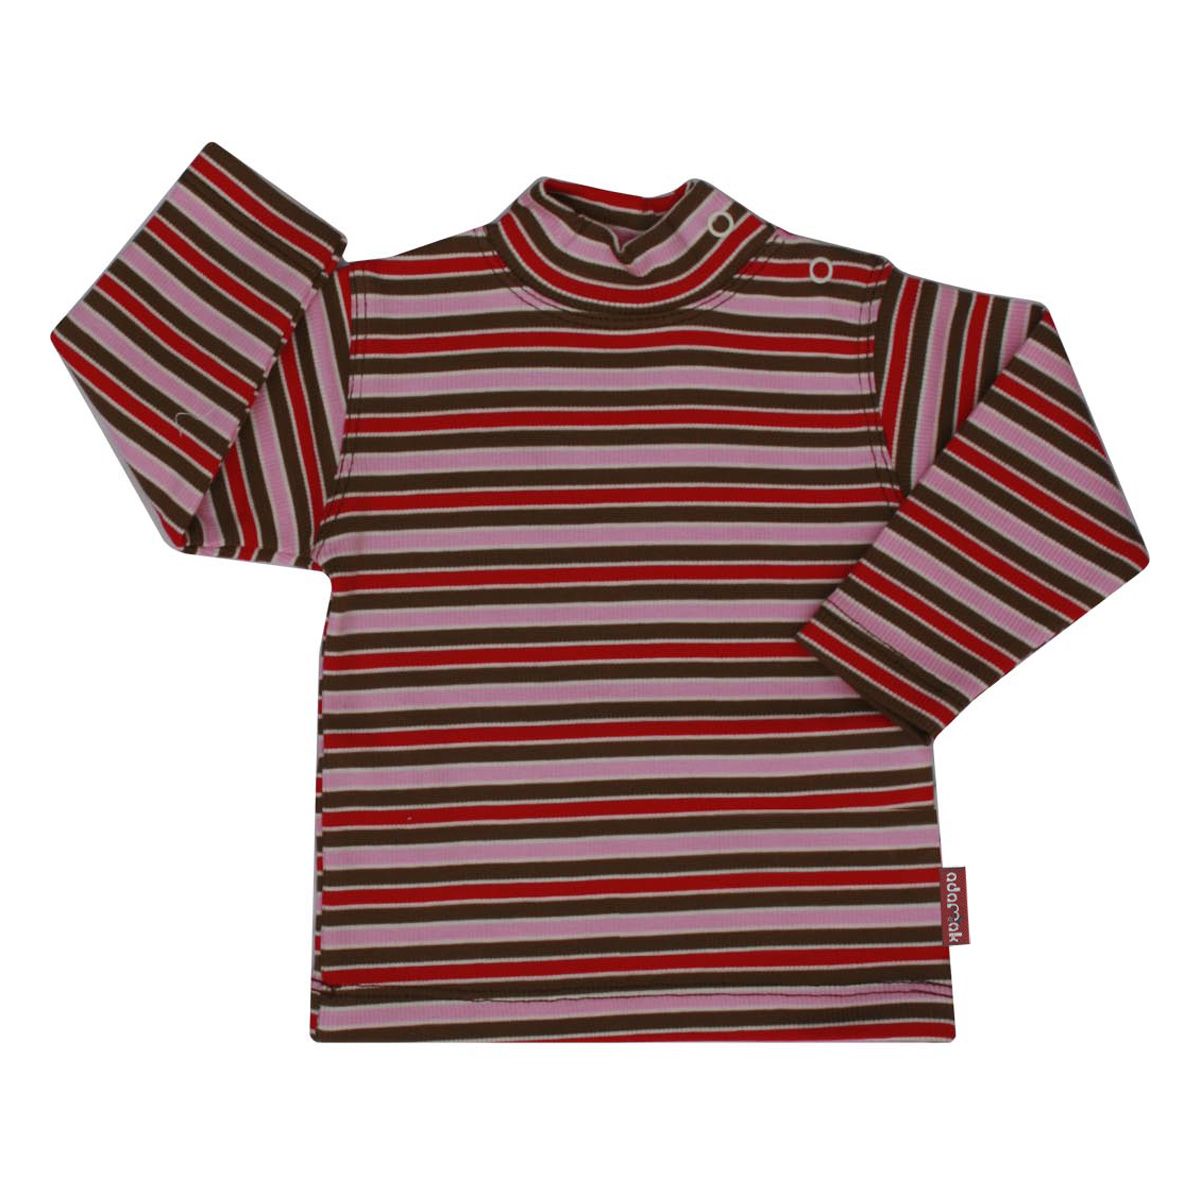 تی شرت آدمک طرح راه راه کد 17-143201 -  - 2